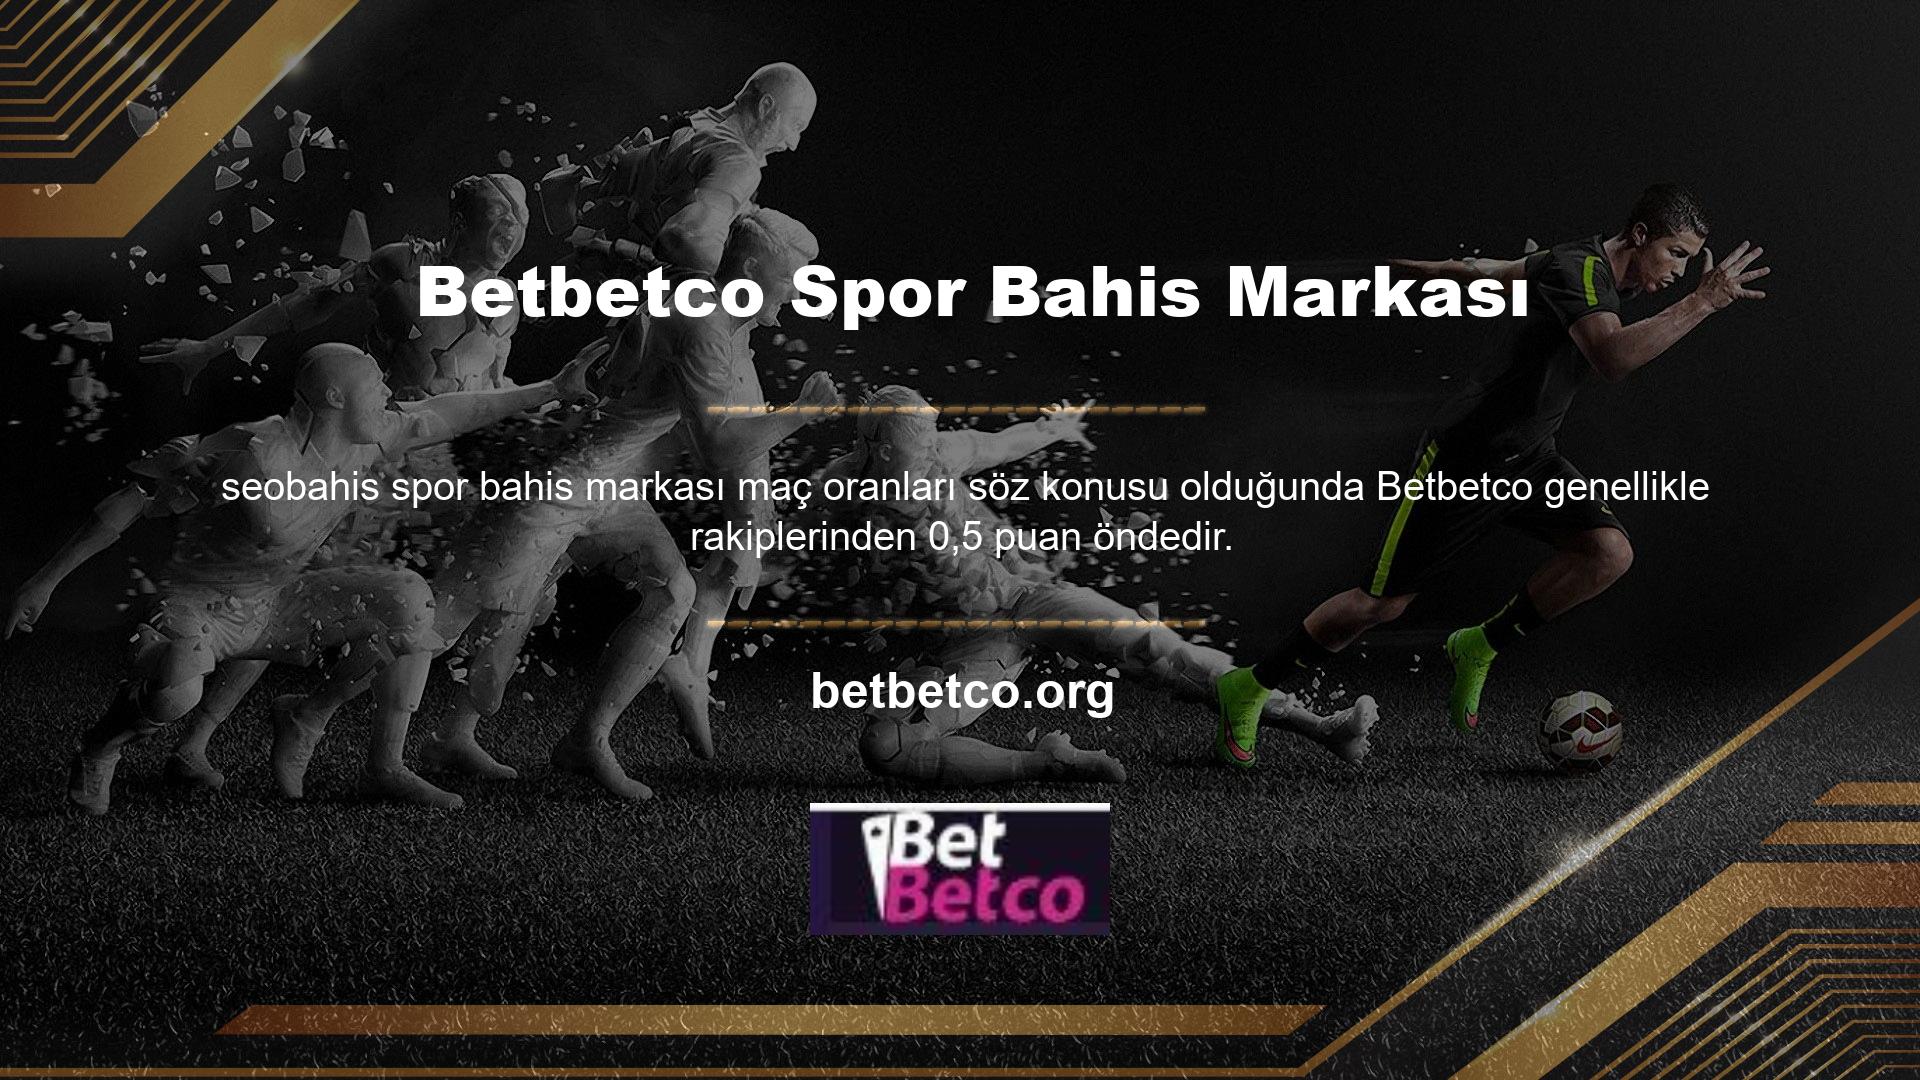 Betbetco teknik ekipleri futbolun yanı sıra diğer spor dallarında da uzmanlaşmıştır